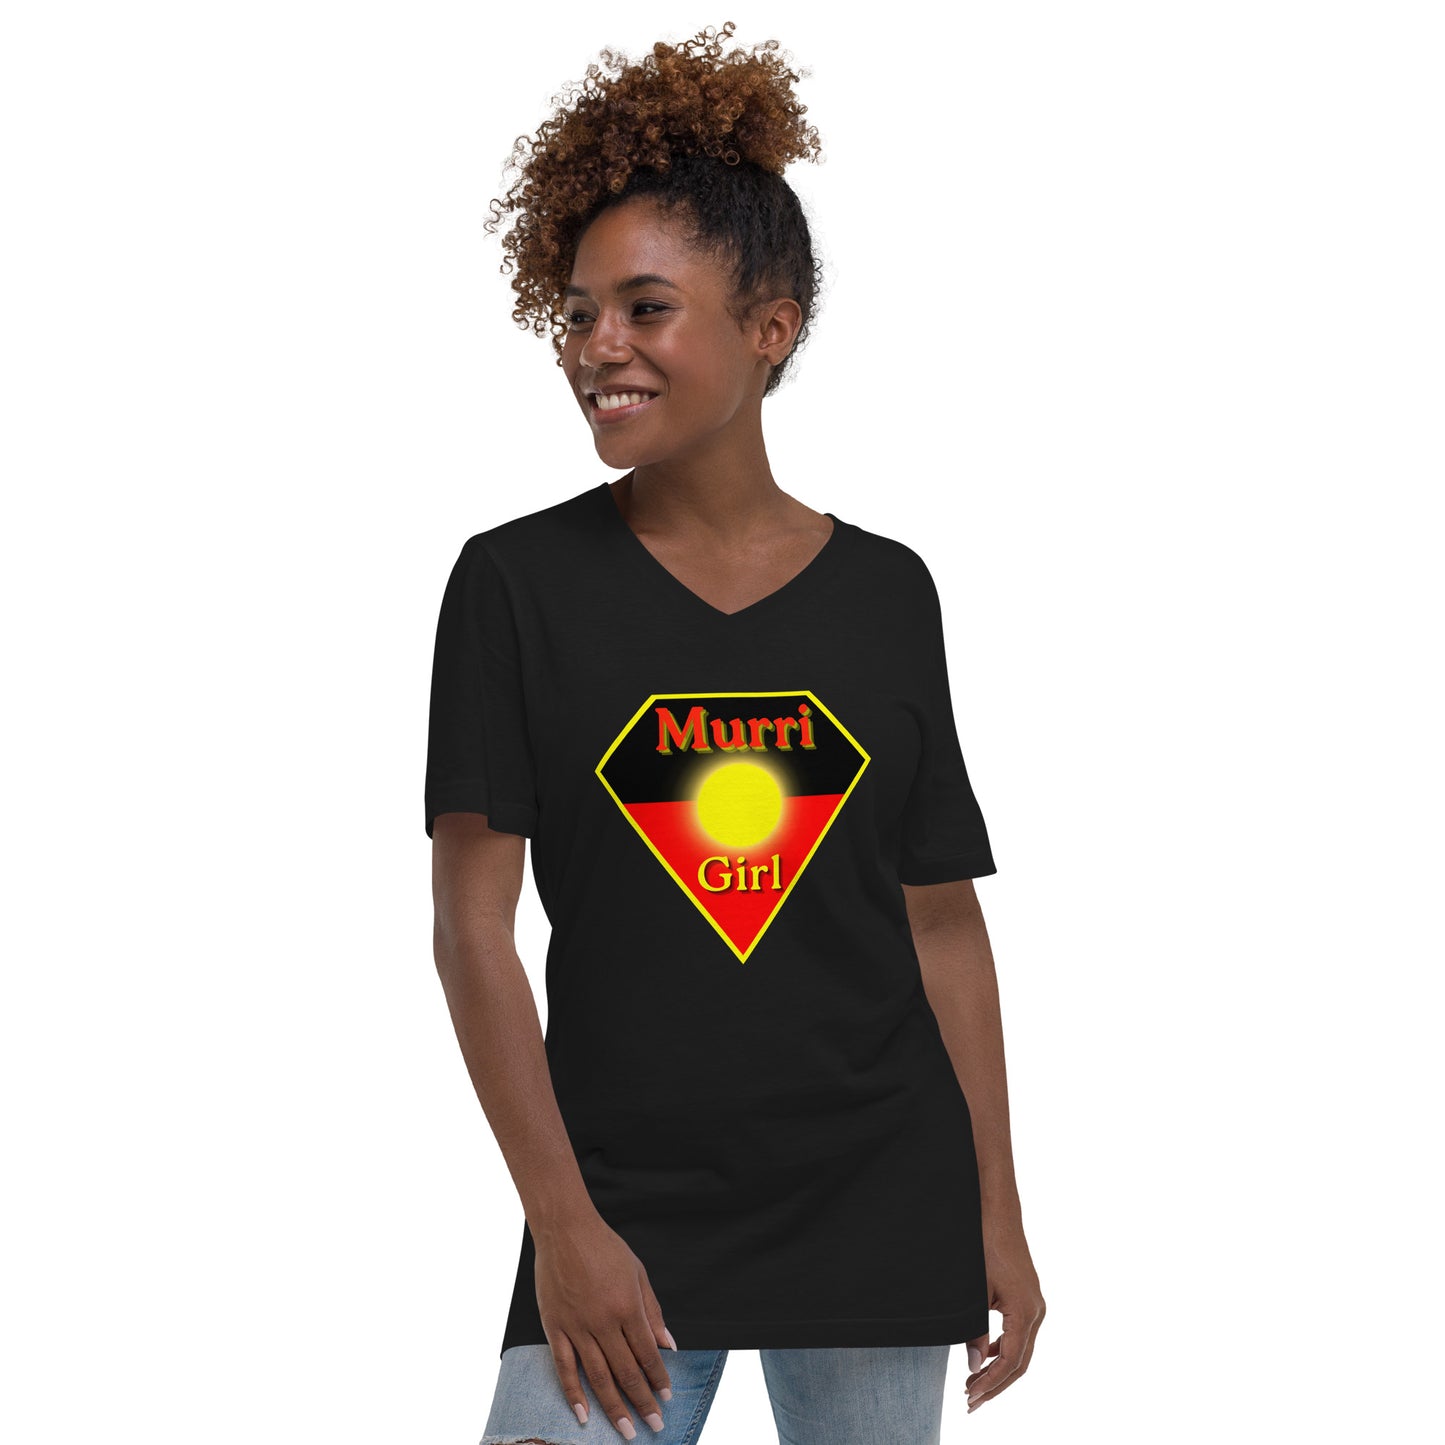 Murri Girl Super Woman V-Neck T-Shirt